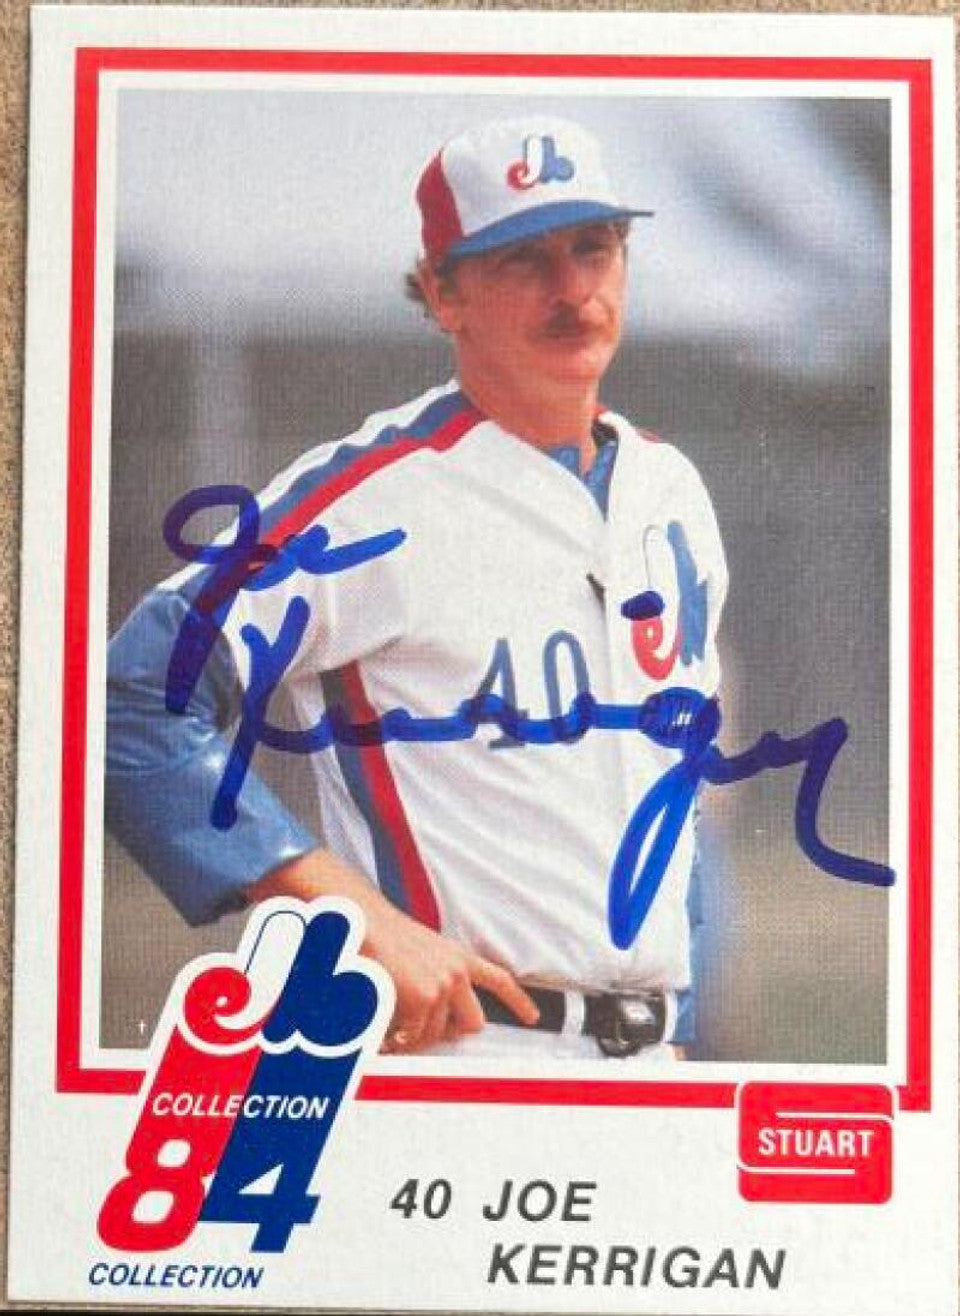 Joe Kerrigan Signed 1984 Stuart Bakery Baseball Card - Montreal Expos